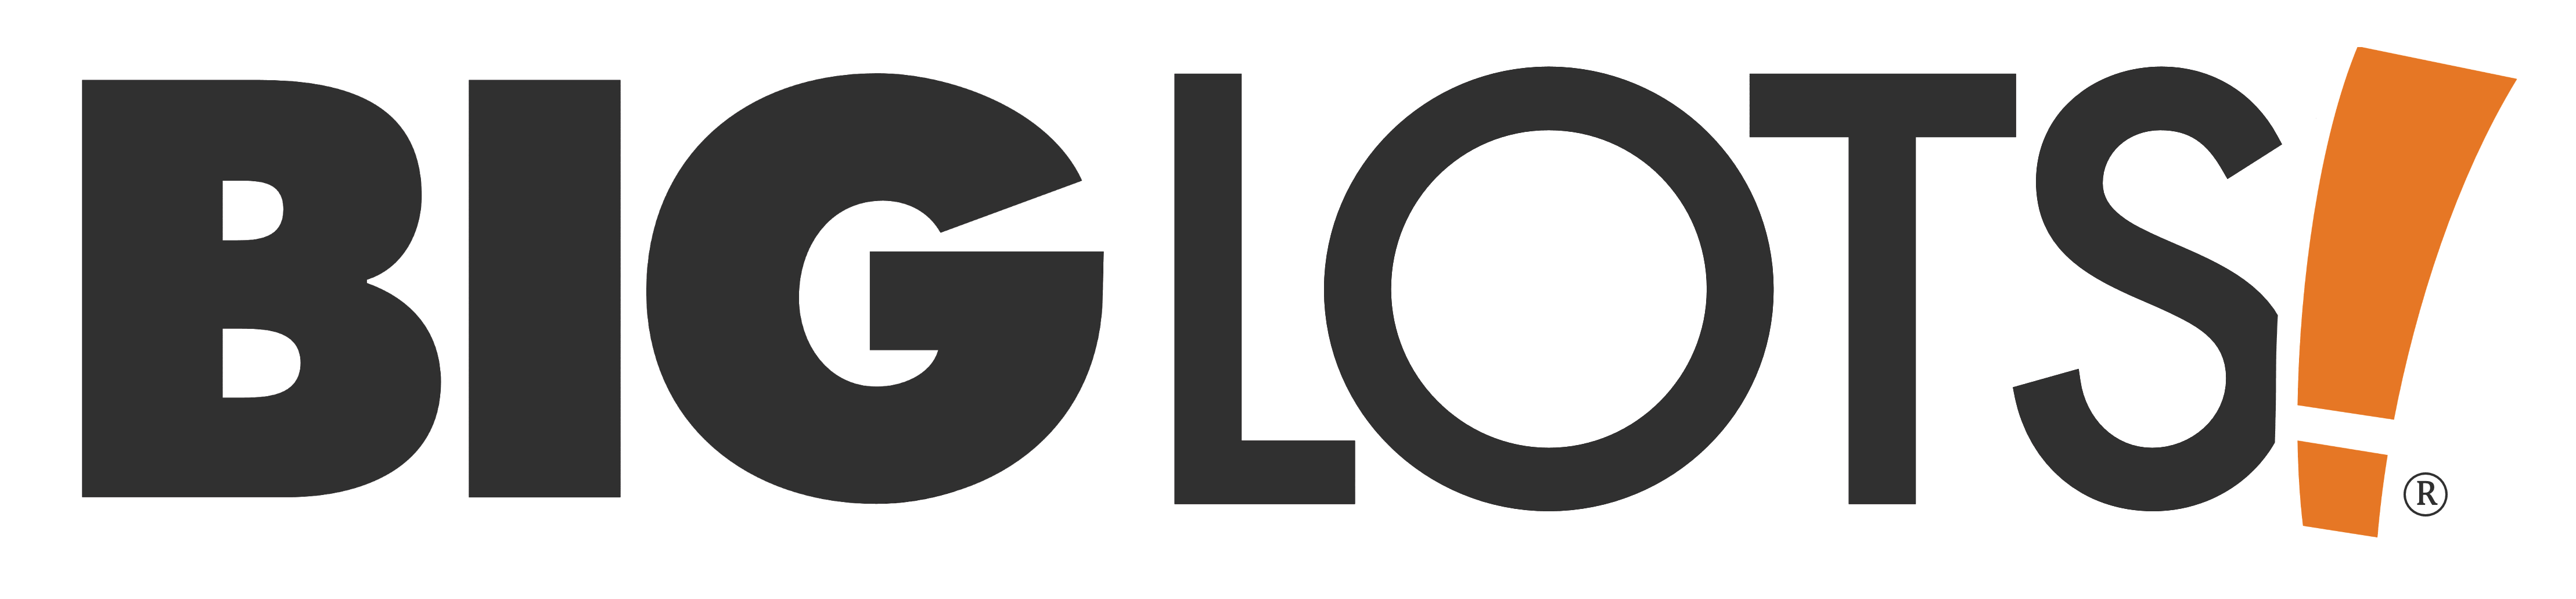 Big Lots Logo - LogoDix